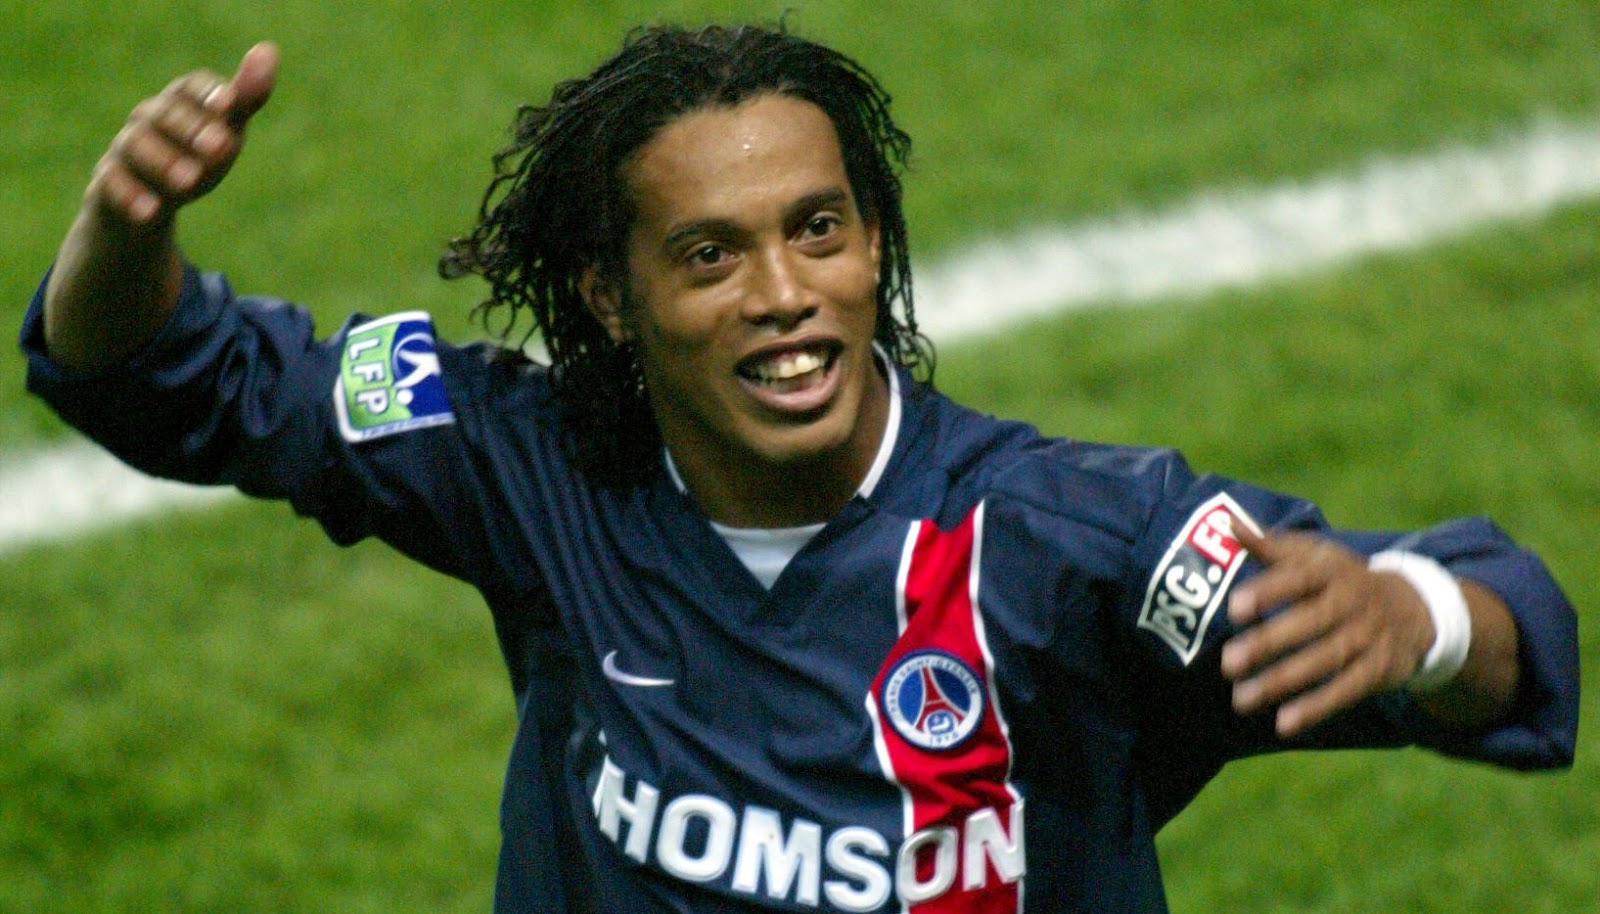 Số áo của Ronaldinho thay đổi liên tục qua các câu lạc bộ